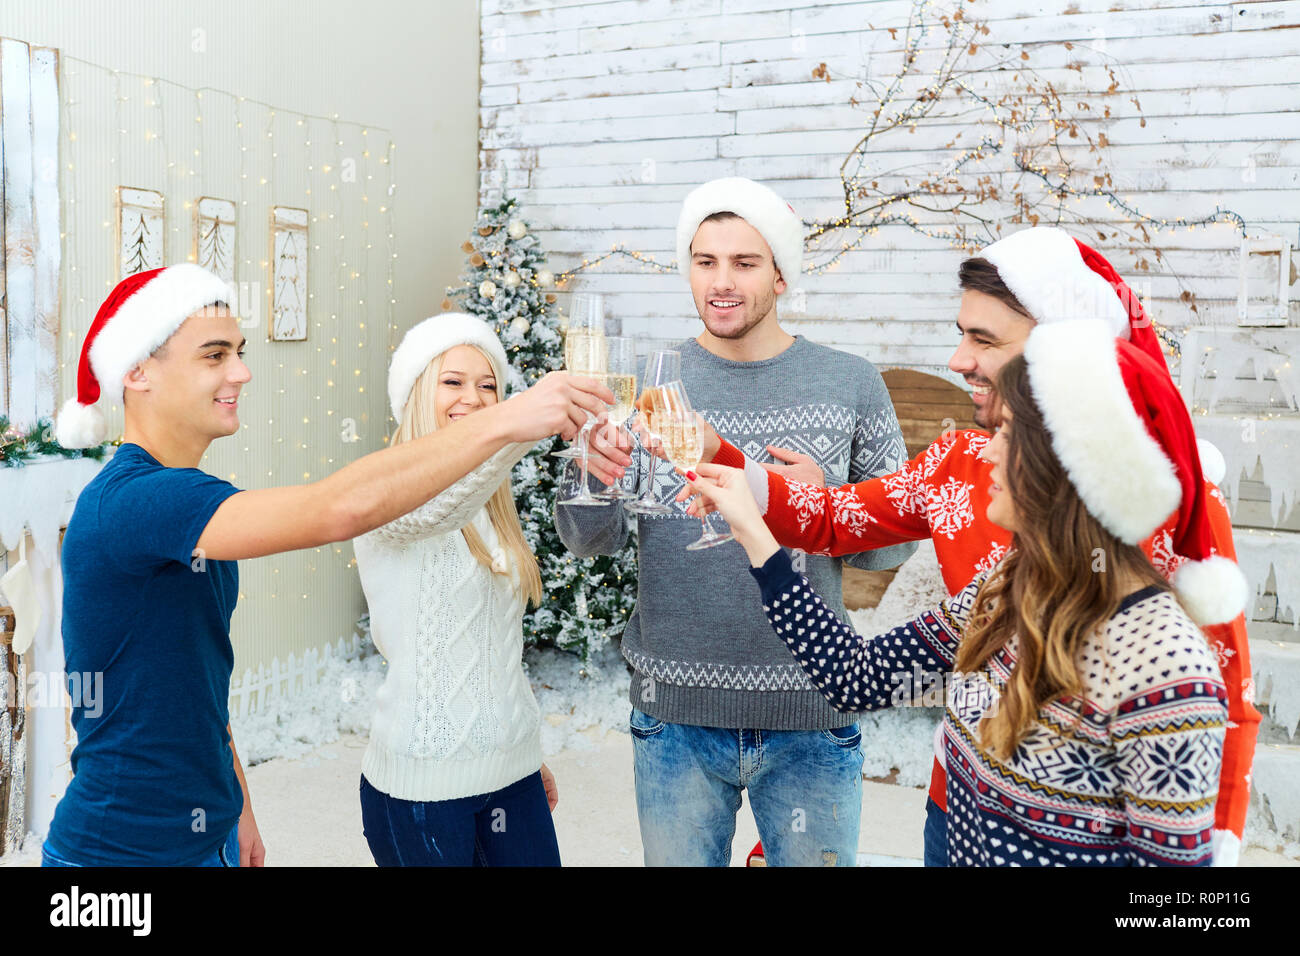 Eine Gruppe von Freunden mit Geschenken an einer Weihnachtsfeier Stockfoto